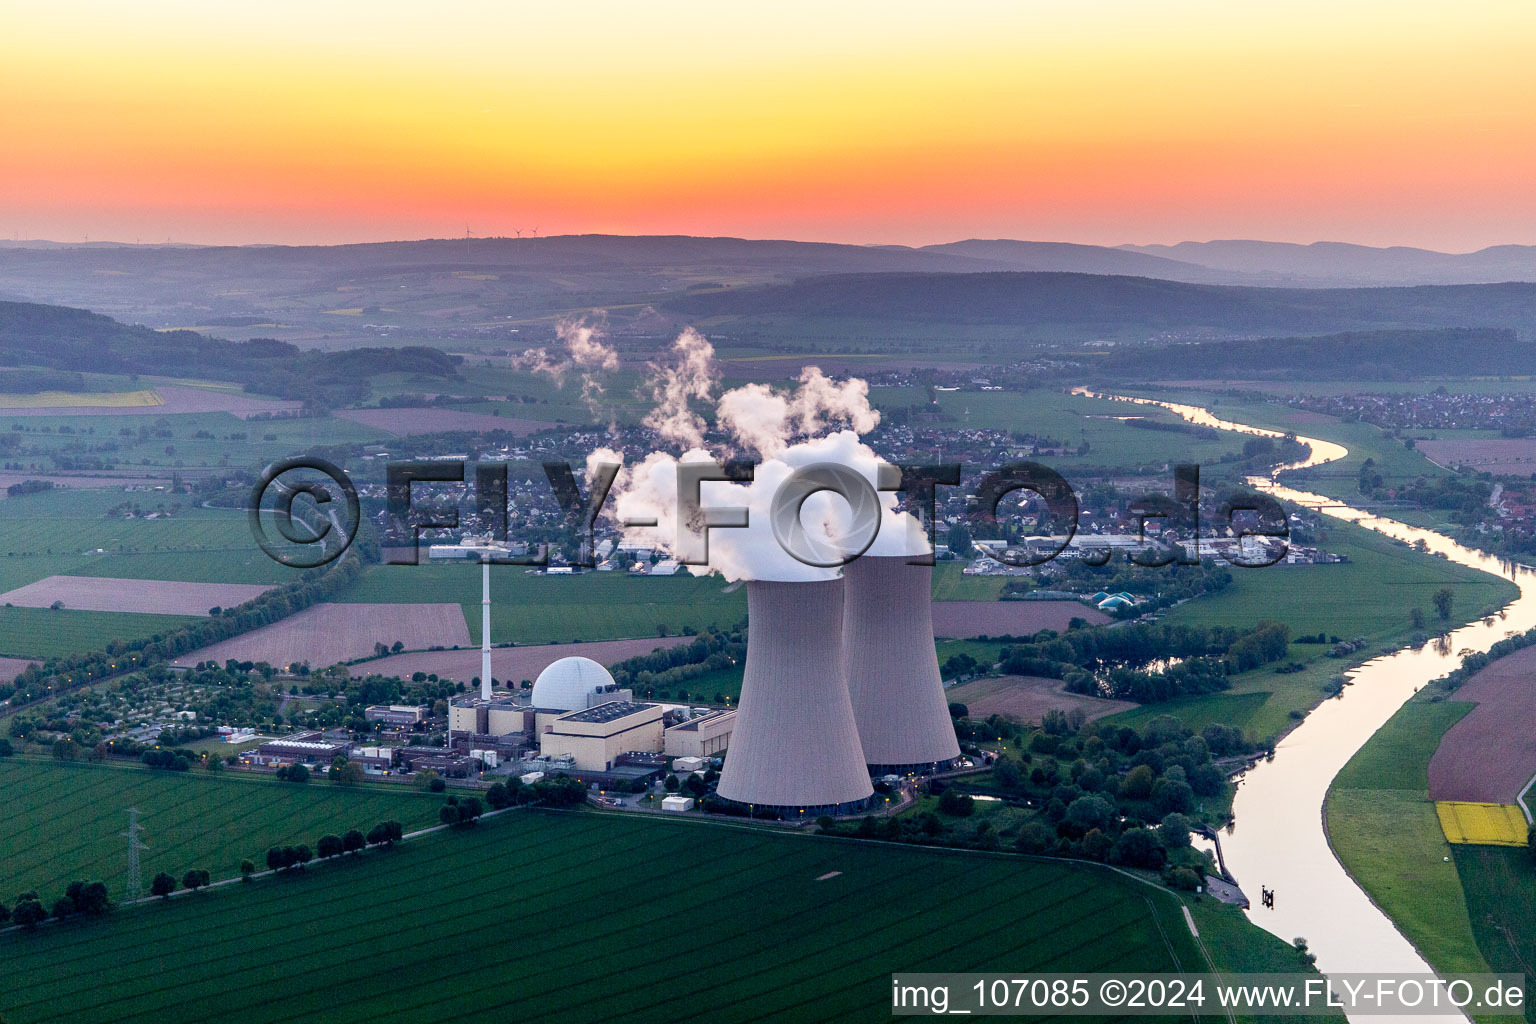 Reaktorblöcke, Kühlturmbauwerke und Anlagen des AKW - KKW Atomkraftwerk - Kernkraftwerk Grohnde an der Weser im Abendrot in Grohnde im Bundesland Niedersachsen, Deutschland